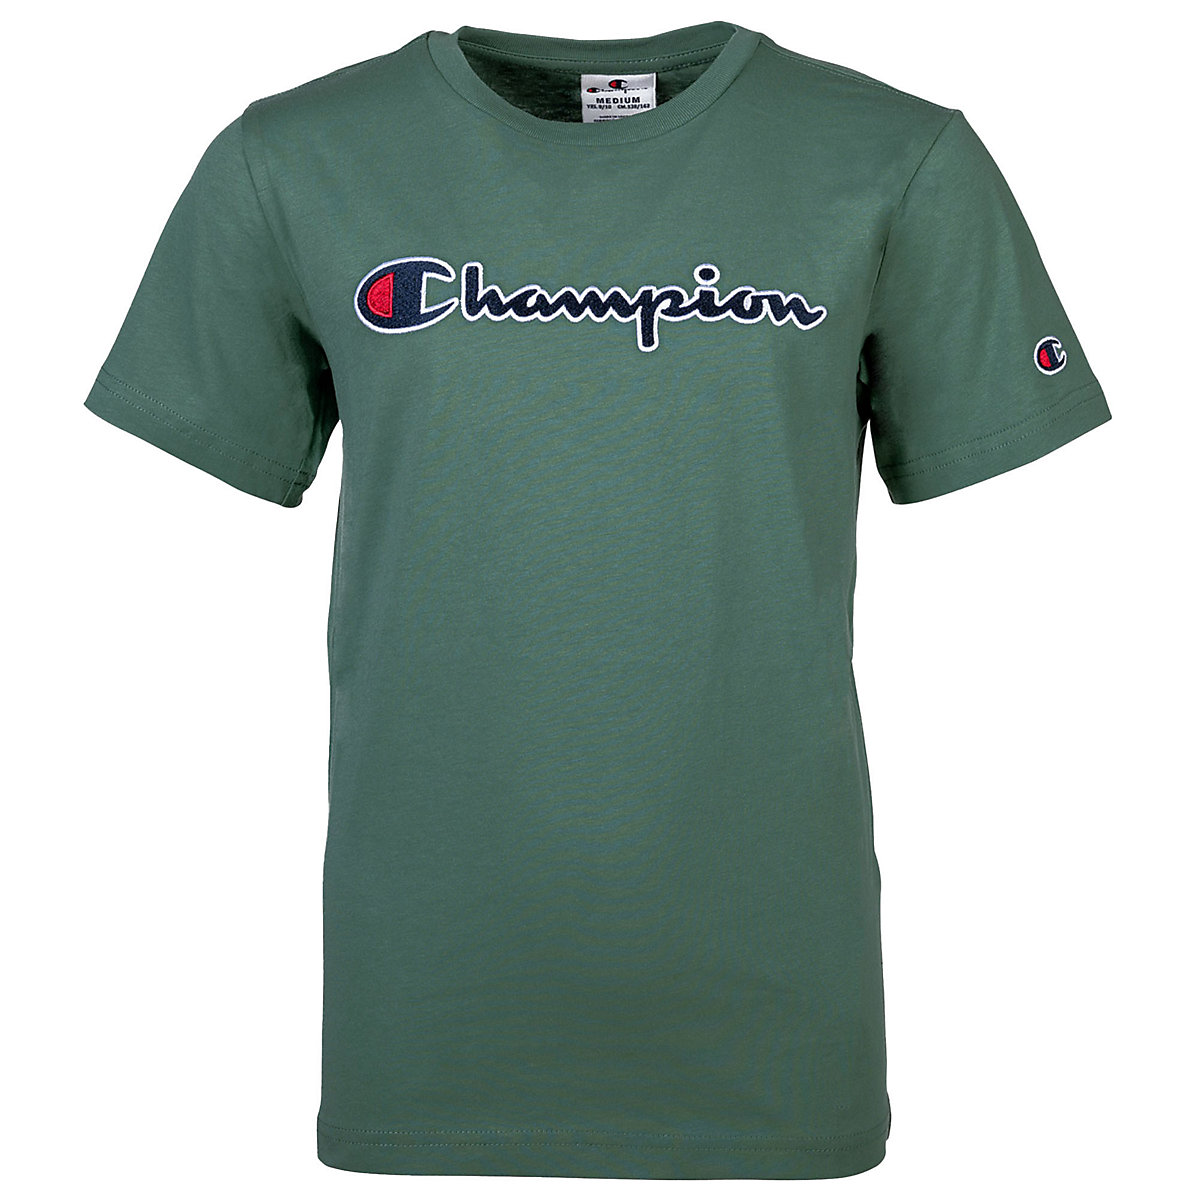 Champion Kinder Unisex T-Shirt Oberteil Rundhals Baumwolle Logo einfarbig T-Shirts für Kinder grün